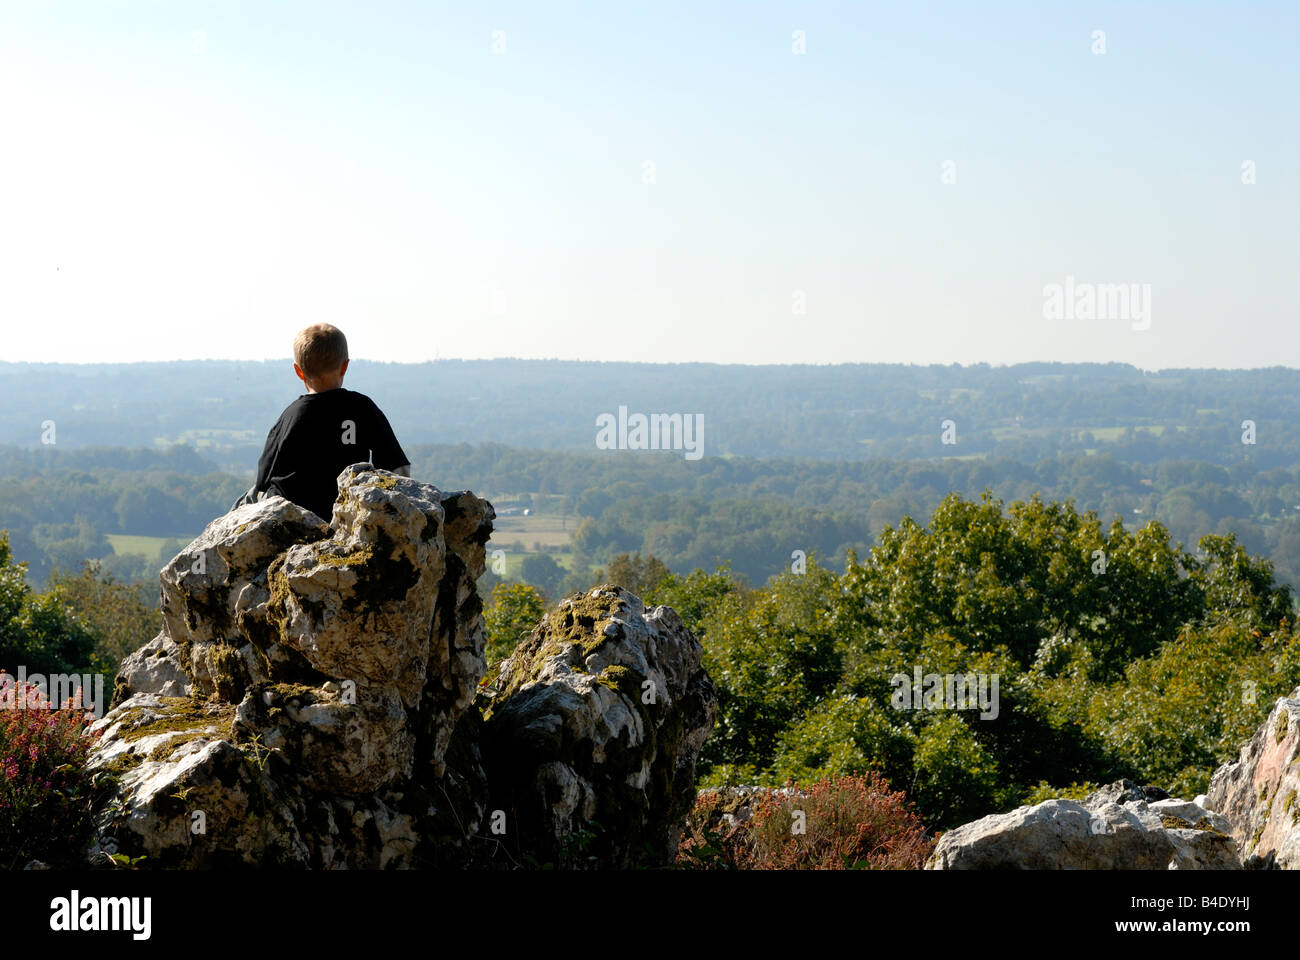 Stock Foto eines jungen Mannes saß allein auf einem Felsvorsprung mit Blick auf eine herrliche Aussicht Stockfoto